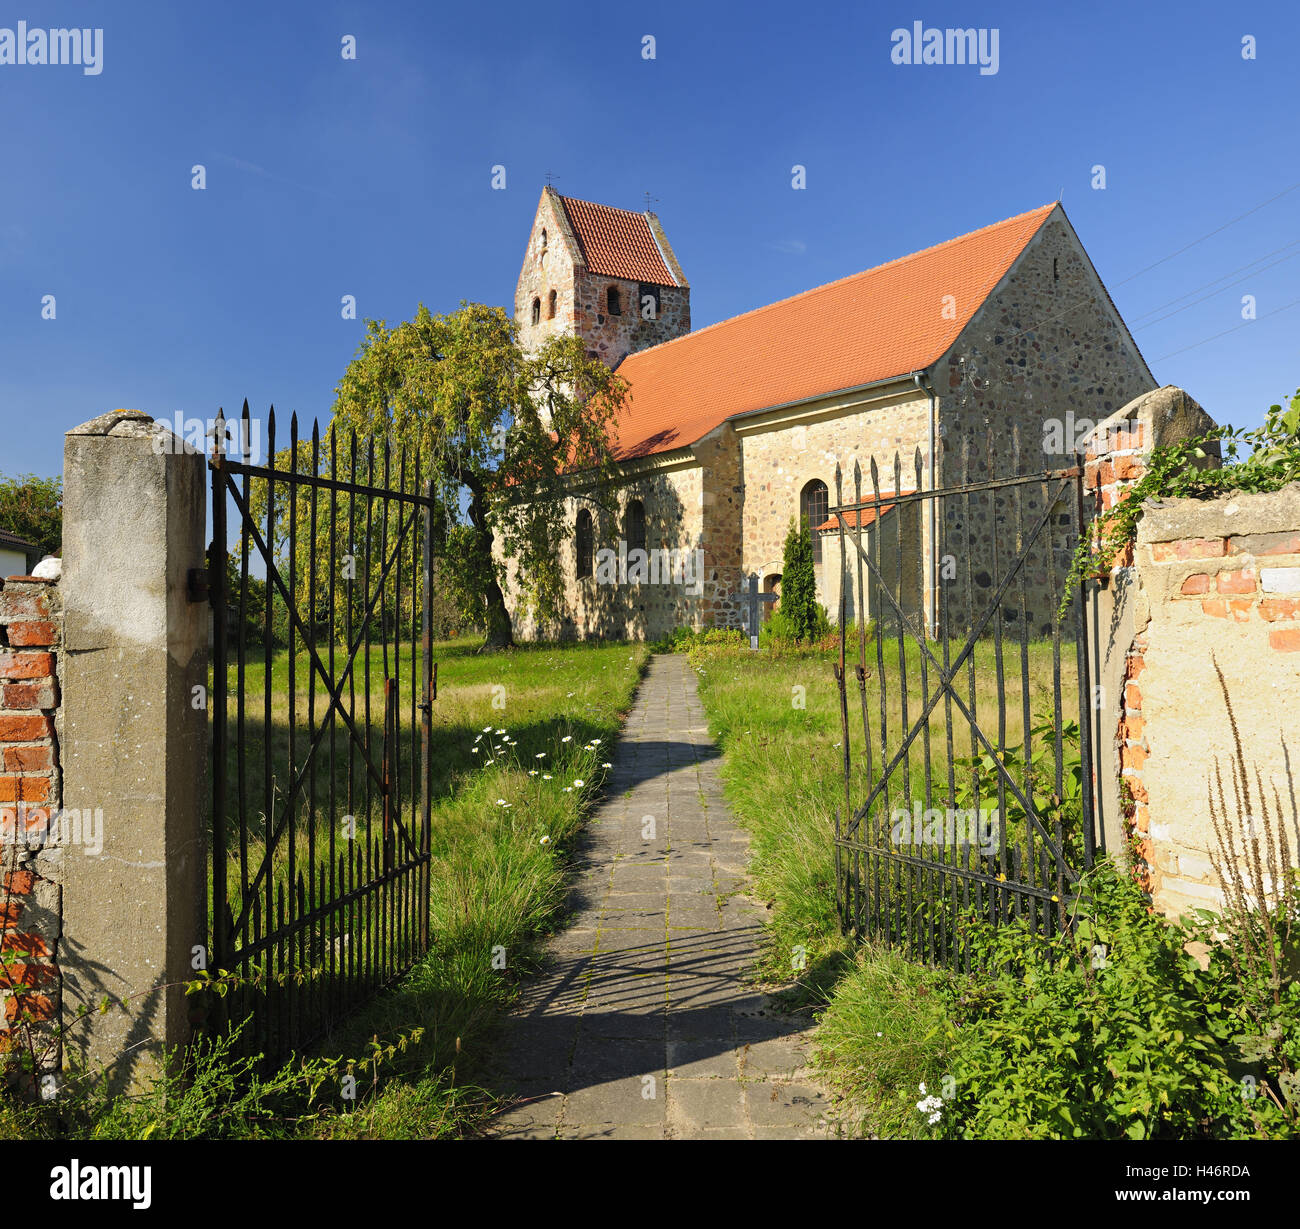 Germany, Saxony-Anhalt, Altmark, Schwiesau, village church, Stock Photo